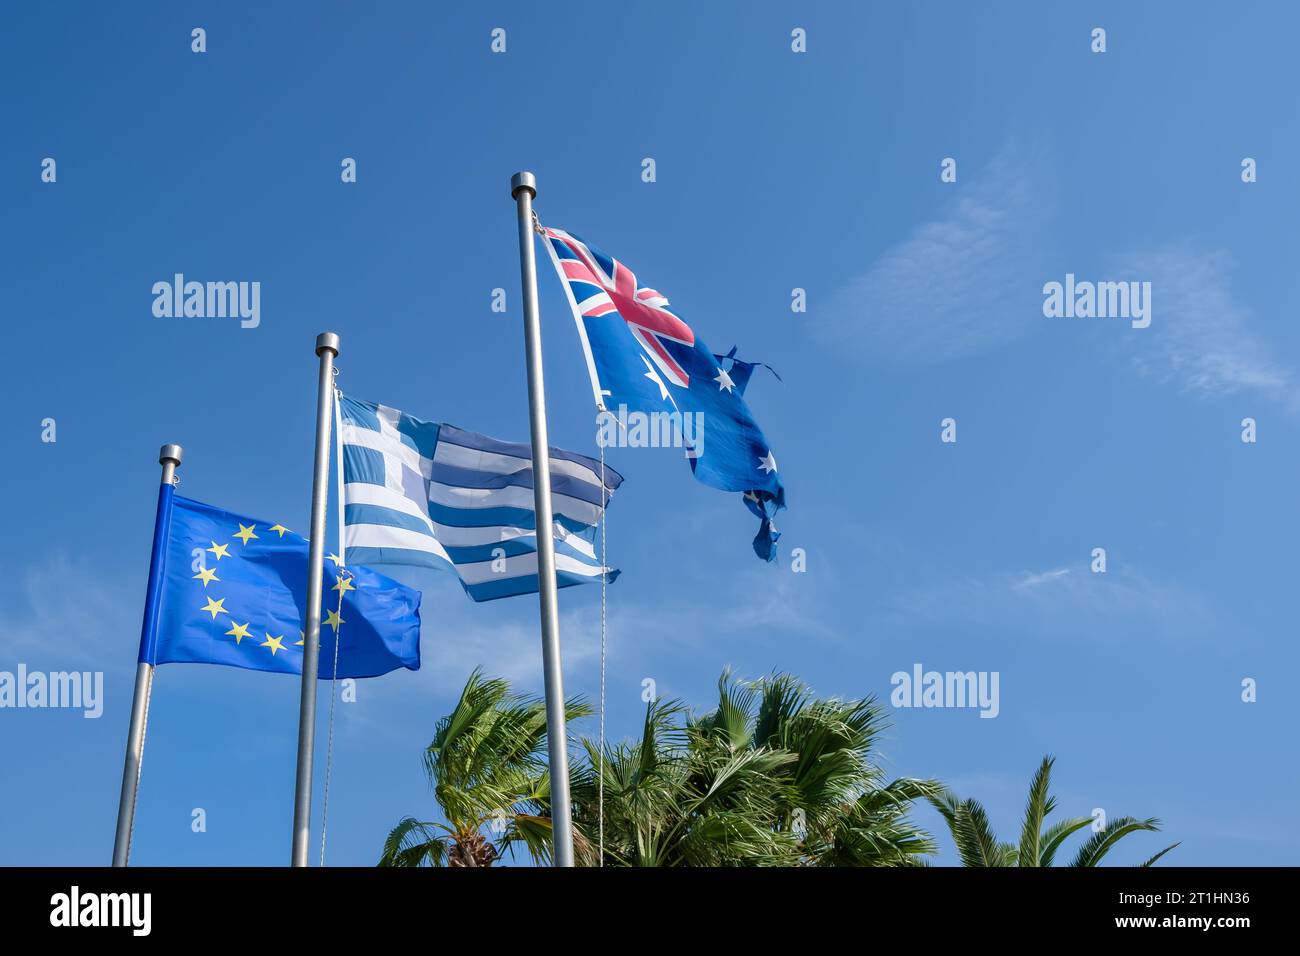 Vue du drapeau national australien, du drapeau national grec et du drapeau de la communauté européenne Banque D'Images